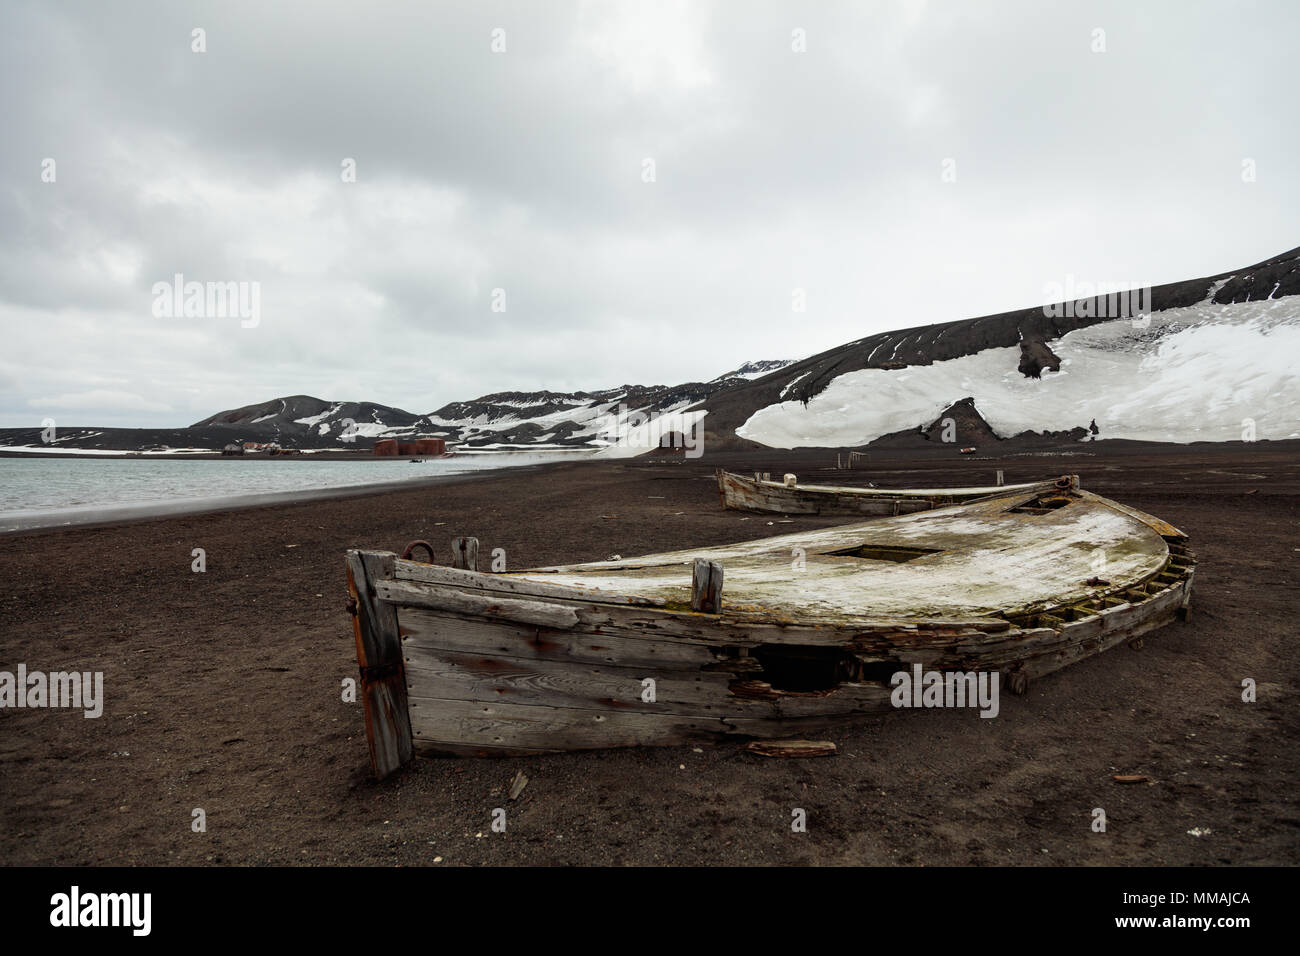 Un barco de agua decadente, utilizado para almacenar agua potable, yace abandonada en la playa, en la Isla Decepción Foto de stock